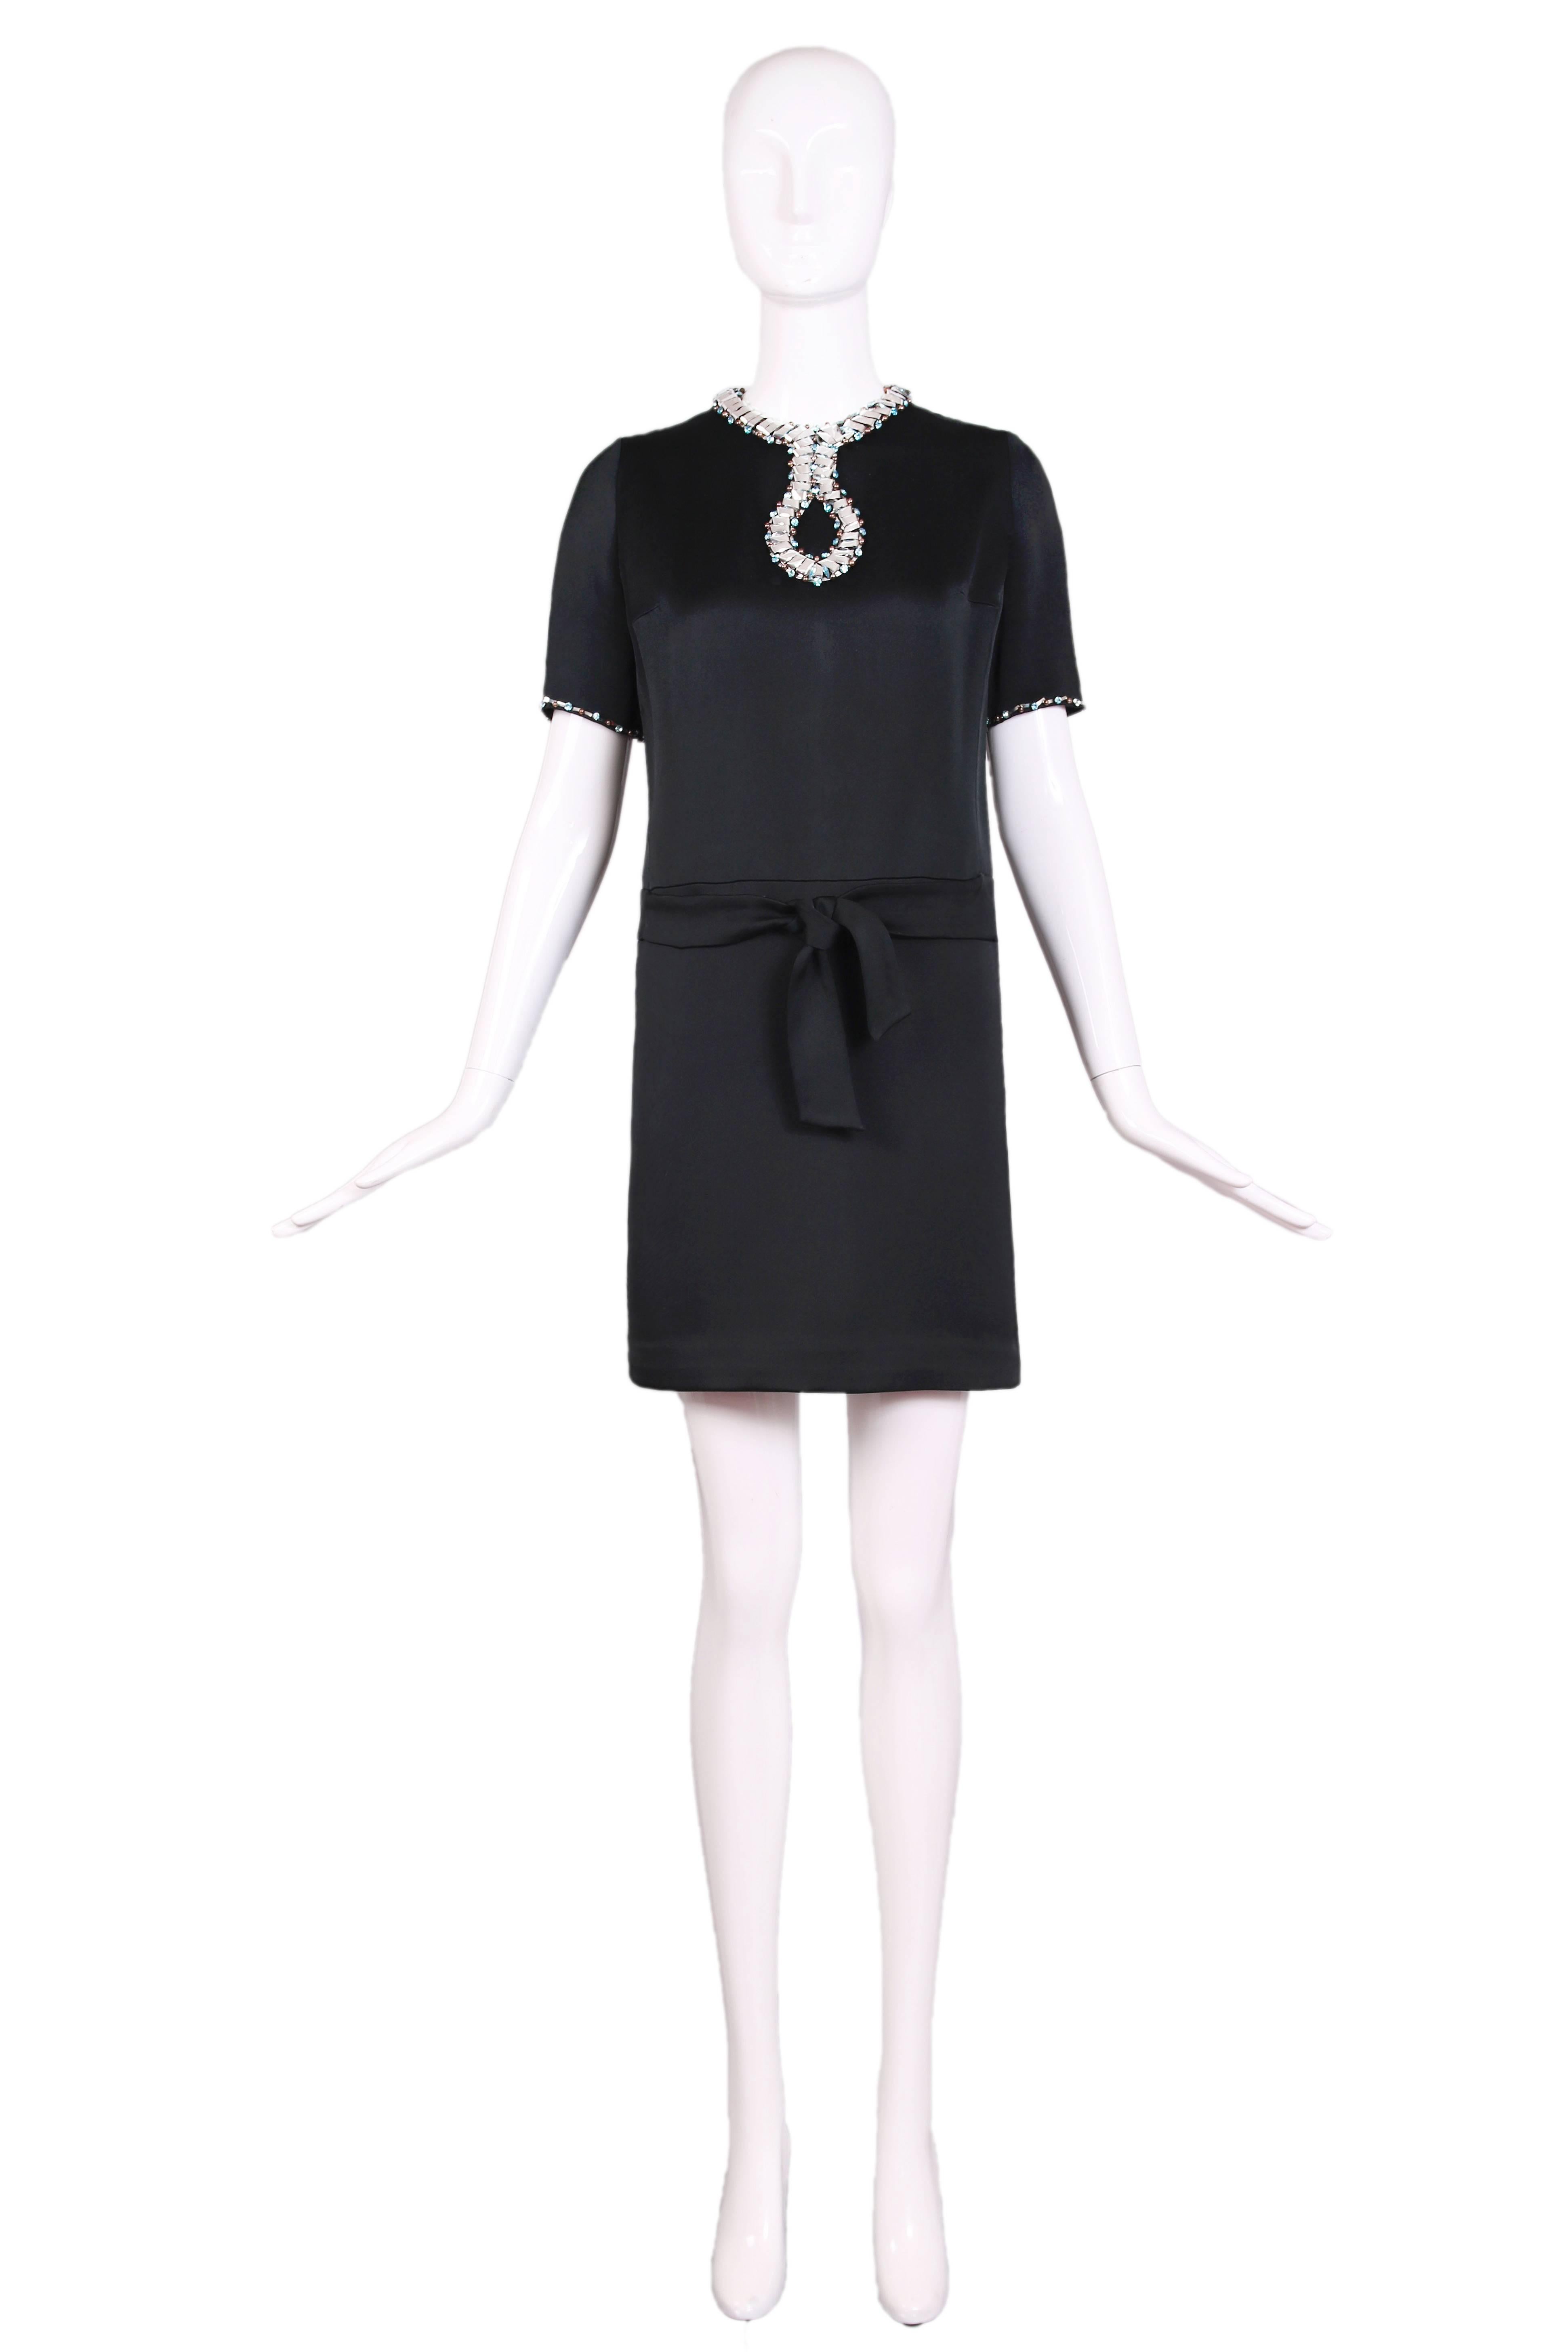 Black Pierre Cardin Haute Couture Cocktail Dress w/Space Age Design Motif ca. 1966 For Sale